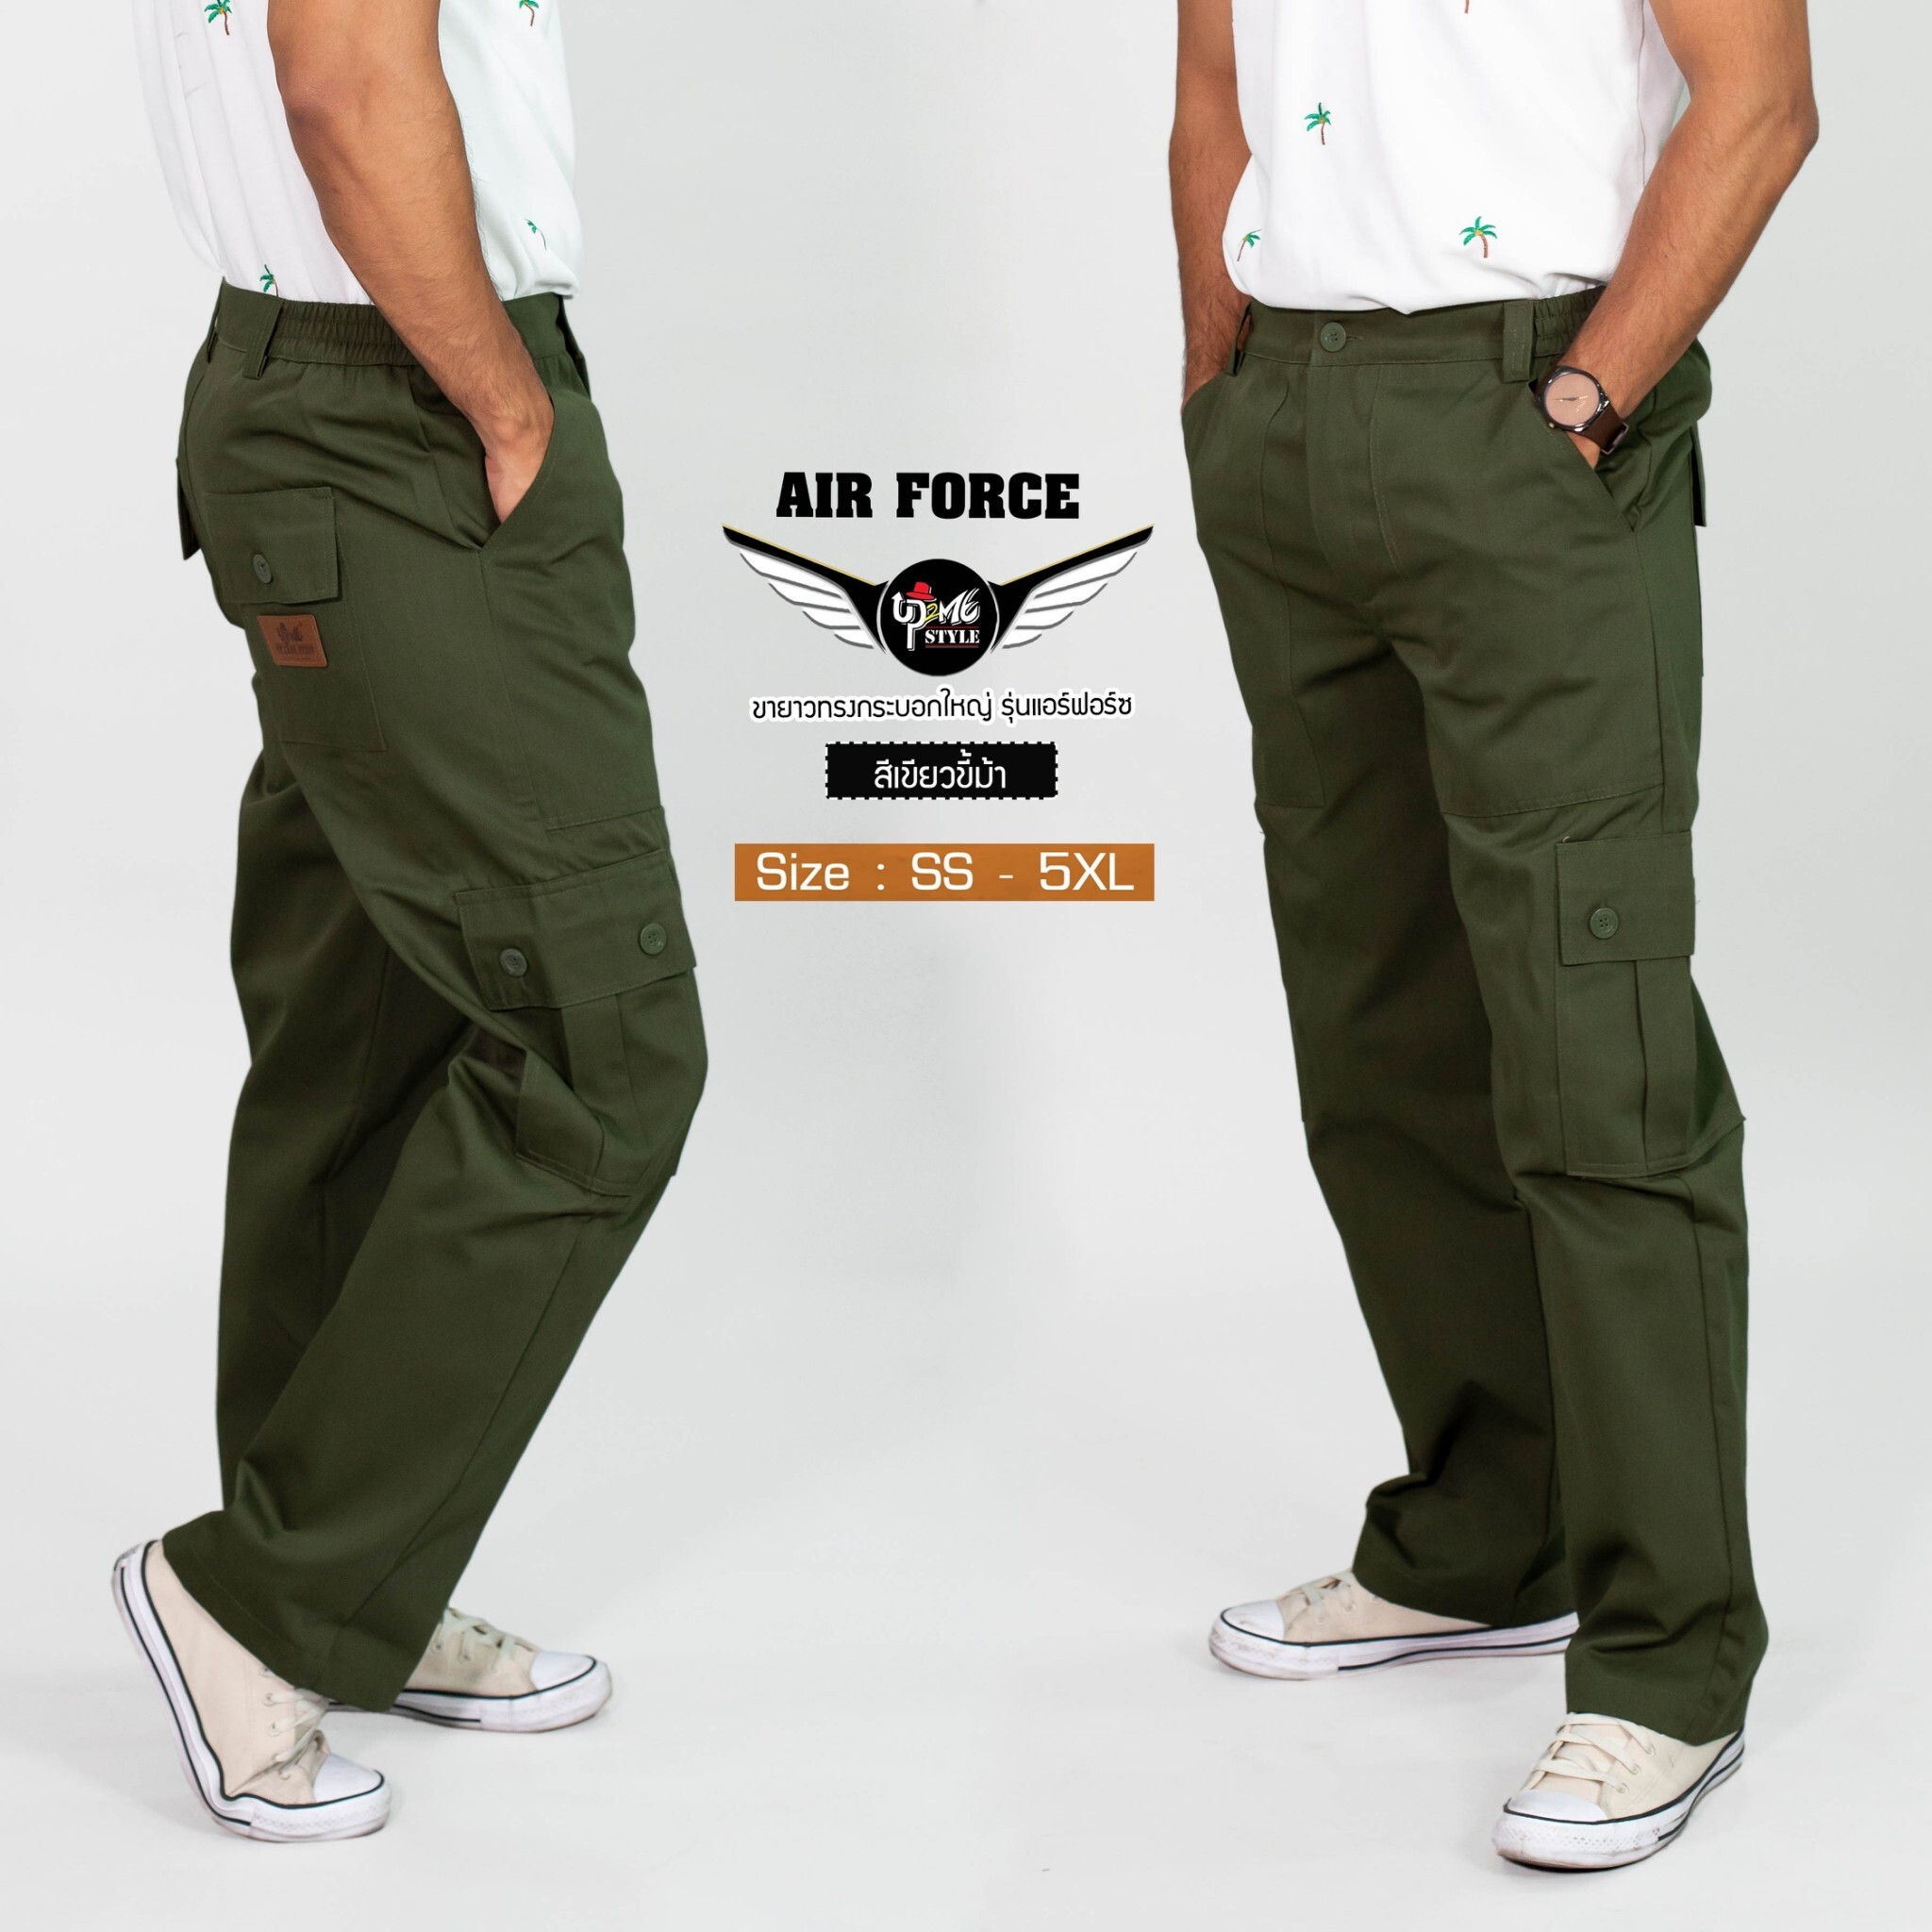 กางเกงคาร์โก้ UP2ME รุ่น AIR FORCE ขายาว (สีเขียวขี้ม้า) ทรงกระบอกใหญ่ มีไซส์ เอว 26 - 46 นิ้ว (SS - 4XL) กางเกงช่าง กางเกงลุยป่า กระเป๋าข้าง